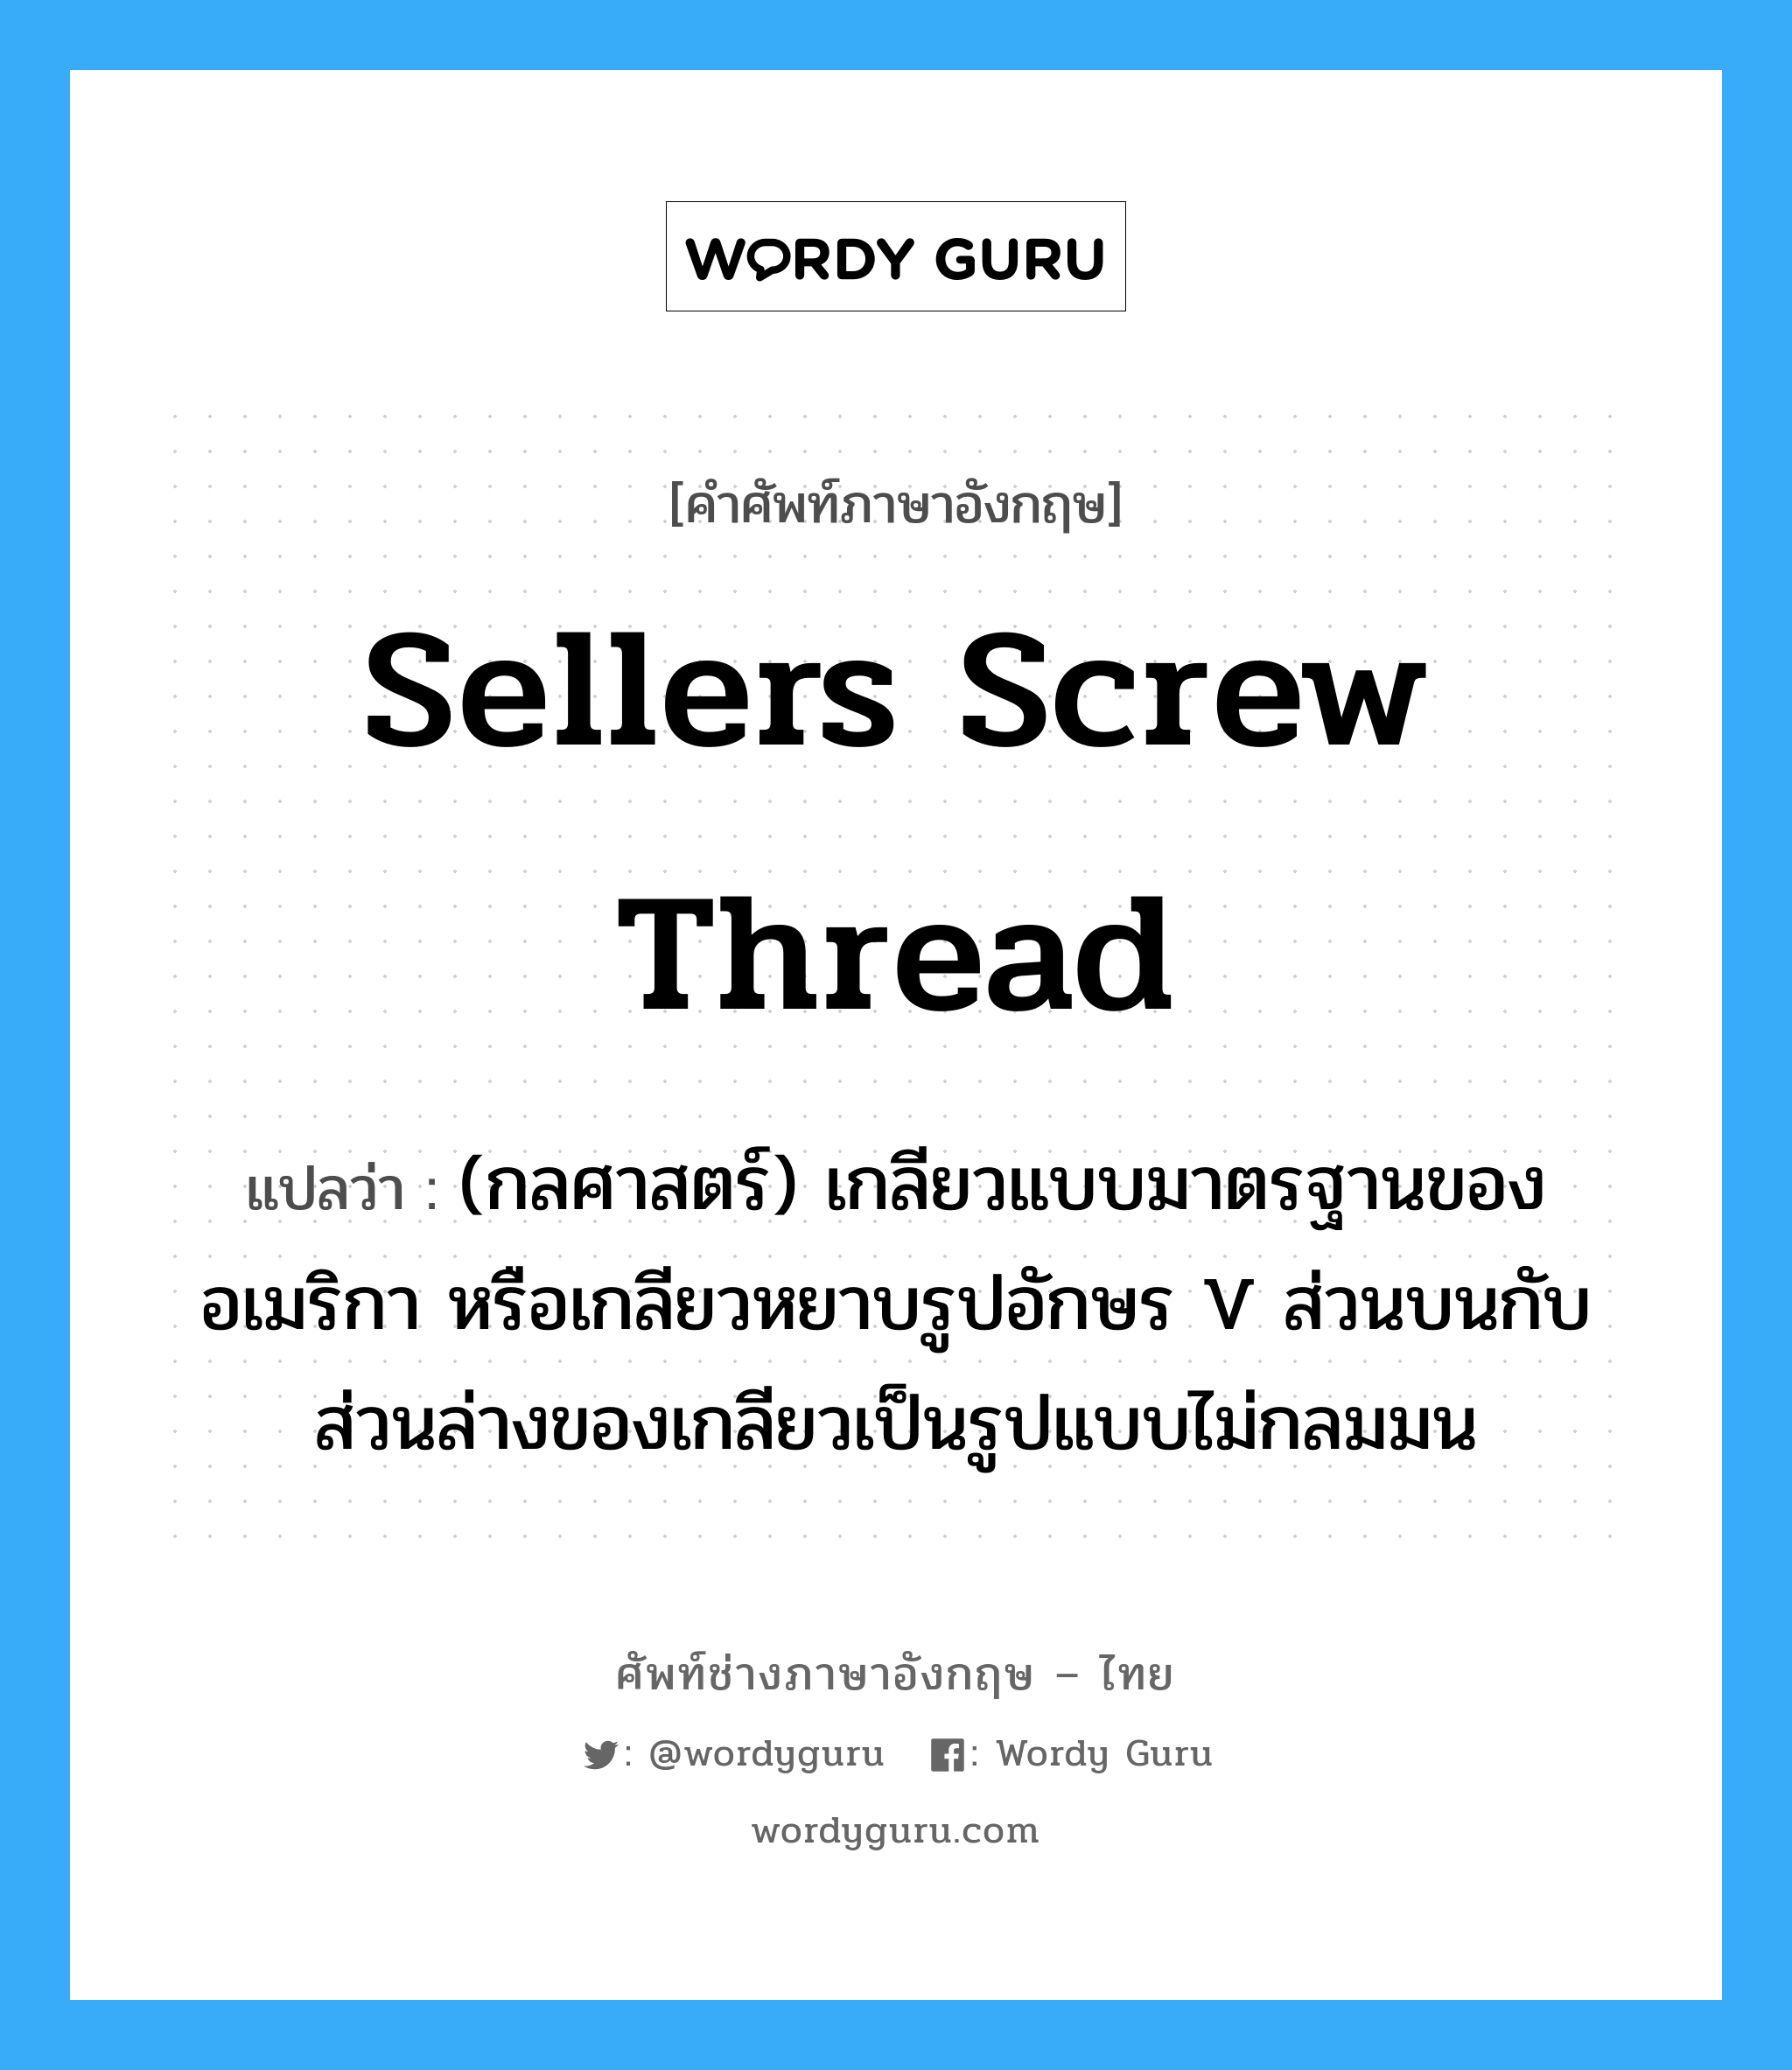 Sellers screw thread แปลว่า?, คำศัพท์ช่างภาษาอังกฤษ - ไทย Sellers screw thread คำศัพท์ภาษาอังกฤษ Sellers screw thread แปลว่า (กลศาสตร์) เกลียวแบบมาตรฐานของอเมริกา หรือเกลียวหยาบรูปอักษร V ส่วนบนกับส่วนล่างของเกลียวเป็นรูปแบบไม่กลมมน